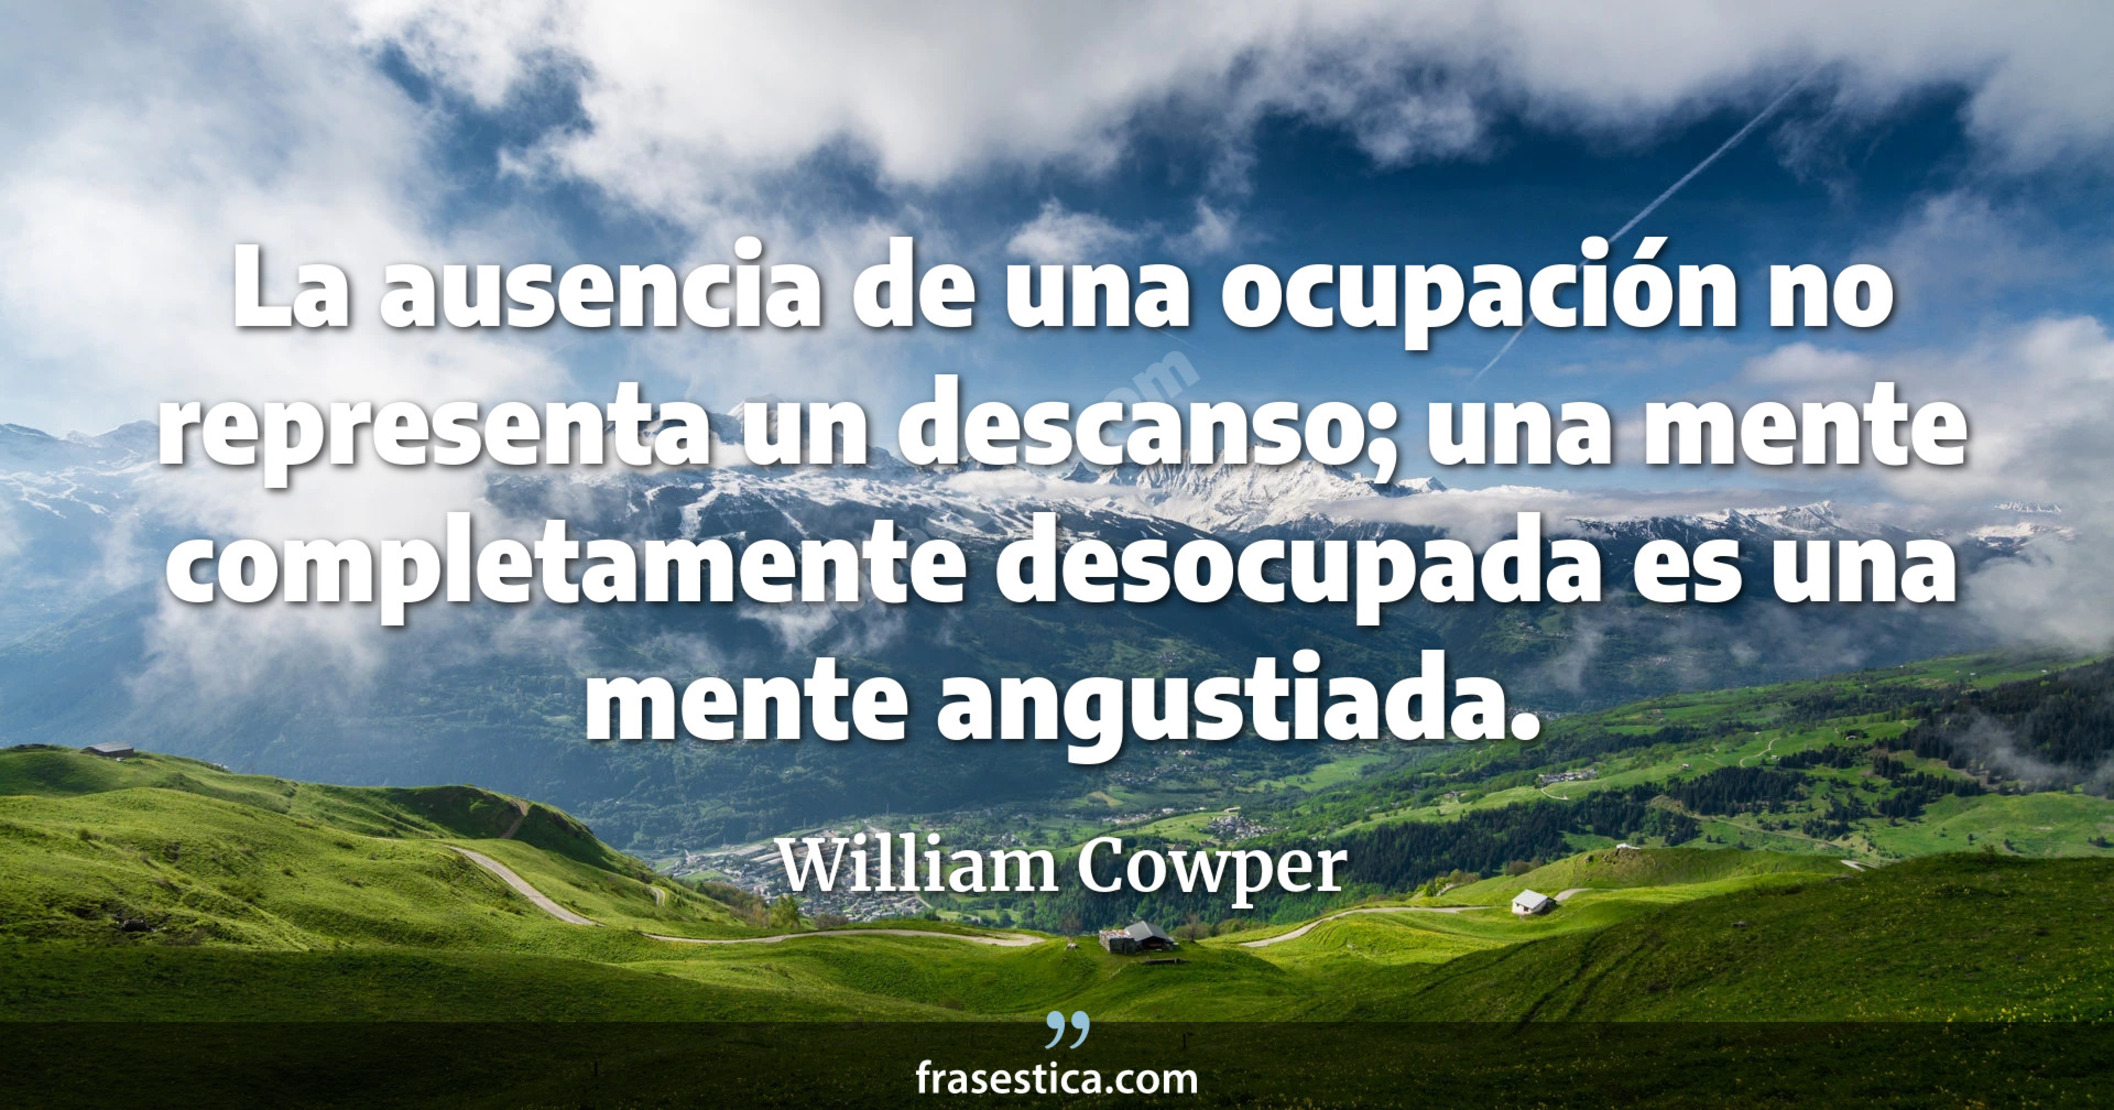 La ausencia de una ocupación no representa un descanso; una mente completamente desocupada es una mente angustiada. - William Cowper